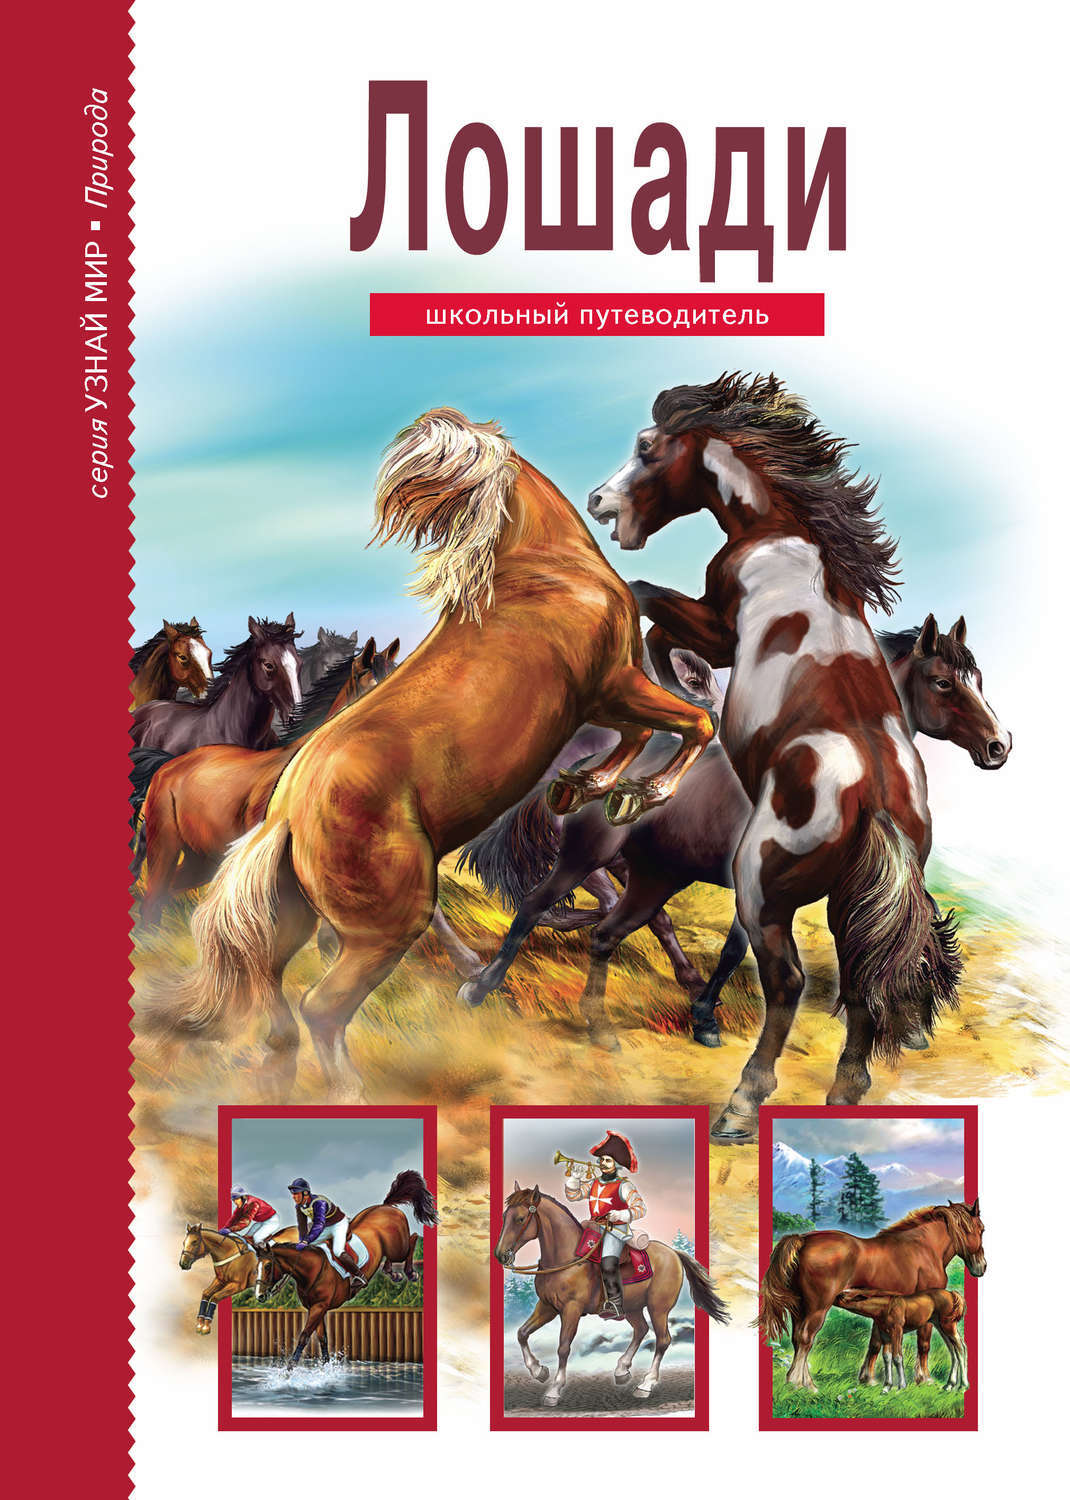 Книги верховая. Книги про лошадей. Лошади. Школьный путеводитель.. Детские книги про лошадей.